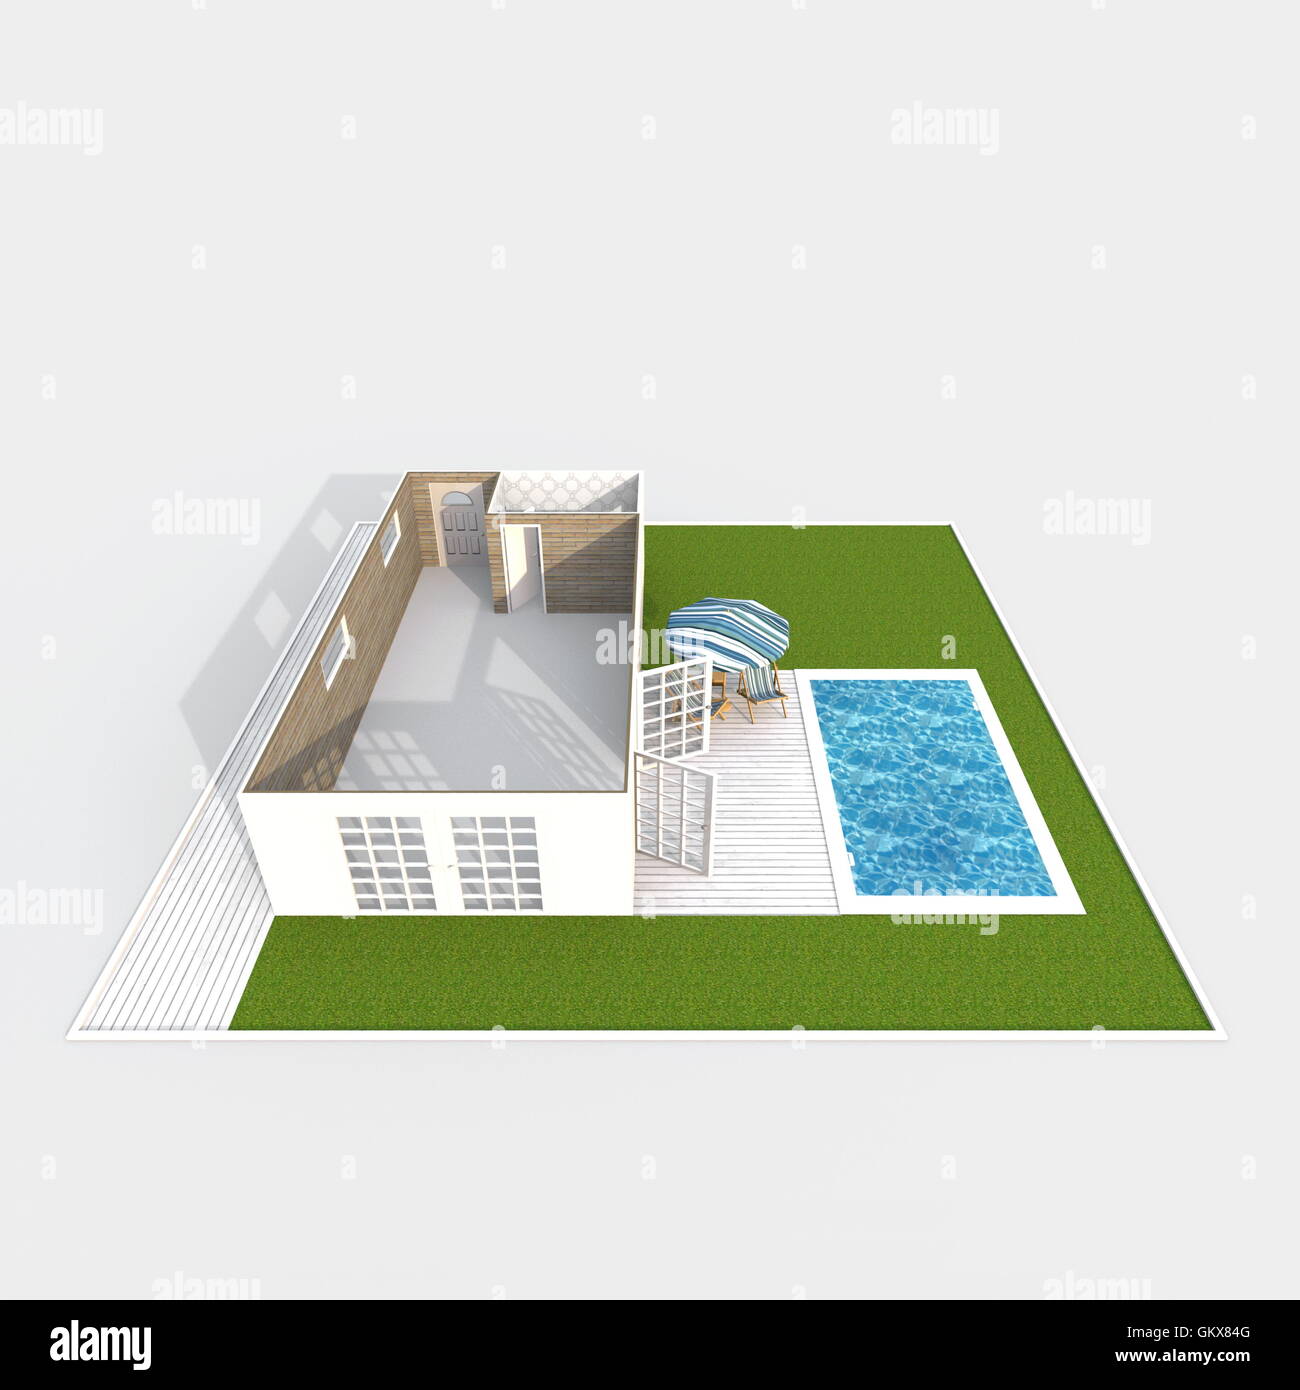 Le rendu 3D Intérieur vue perspective de bungalow vide accueil appartement avec jardin et piscine verte Banque D'Images